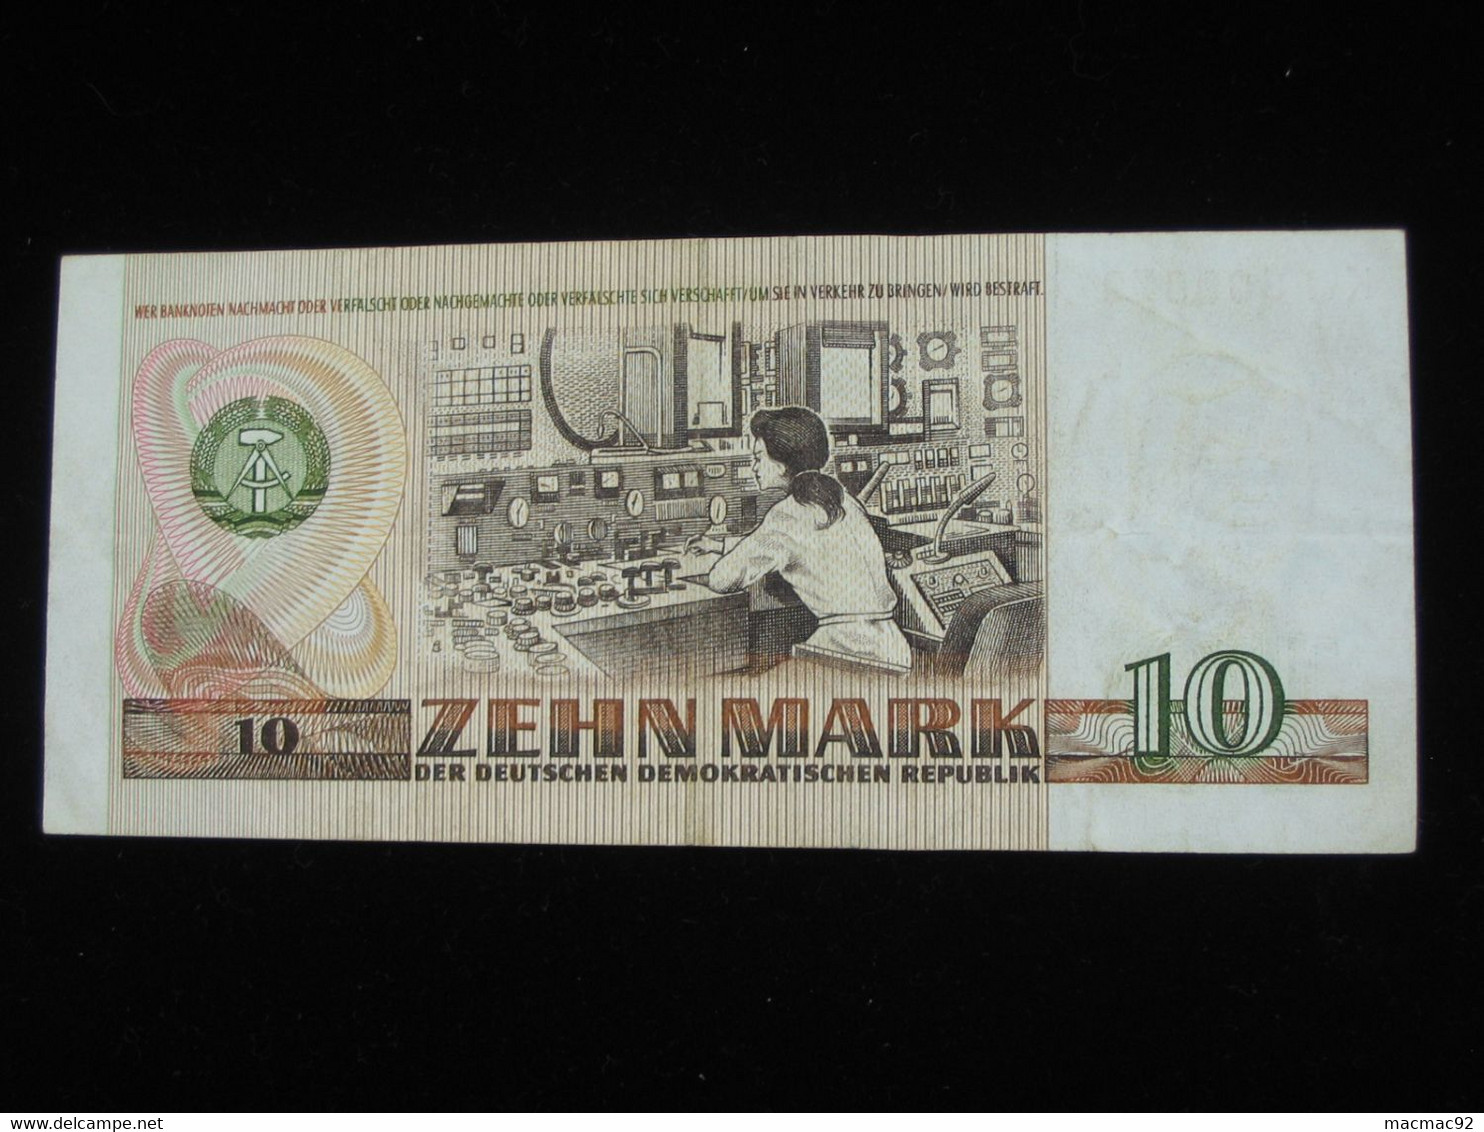 10 ZEHN Mark 1971 - Allemagne - Germany - Deutschen Demokratichen Republik **** ACHAT IMMEDIAT *** - 5 Mark